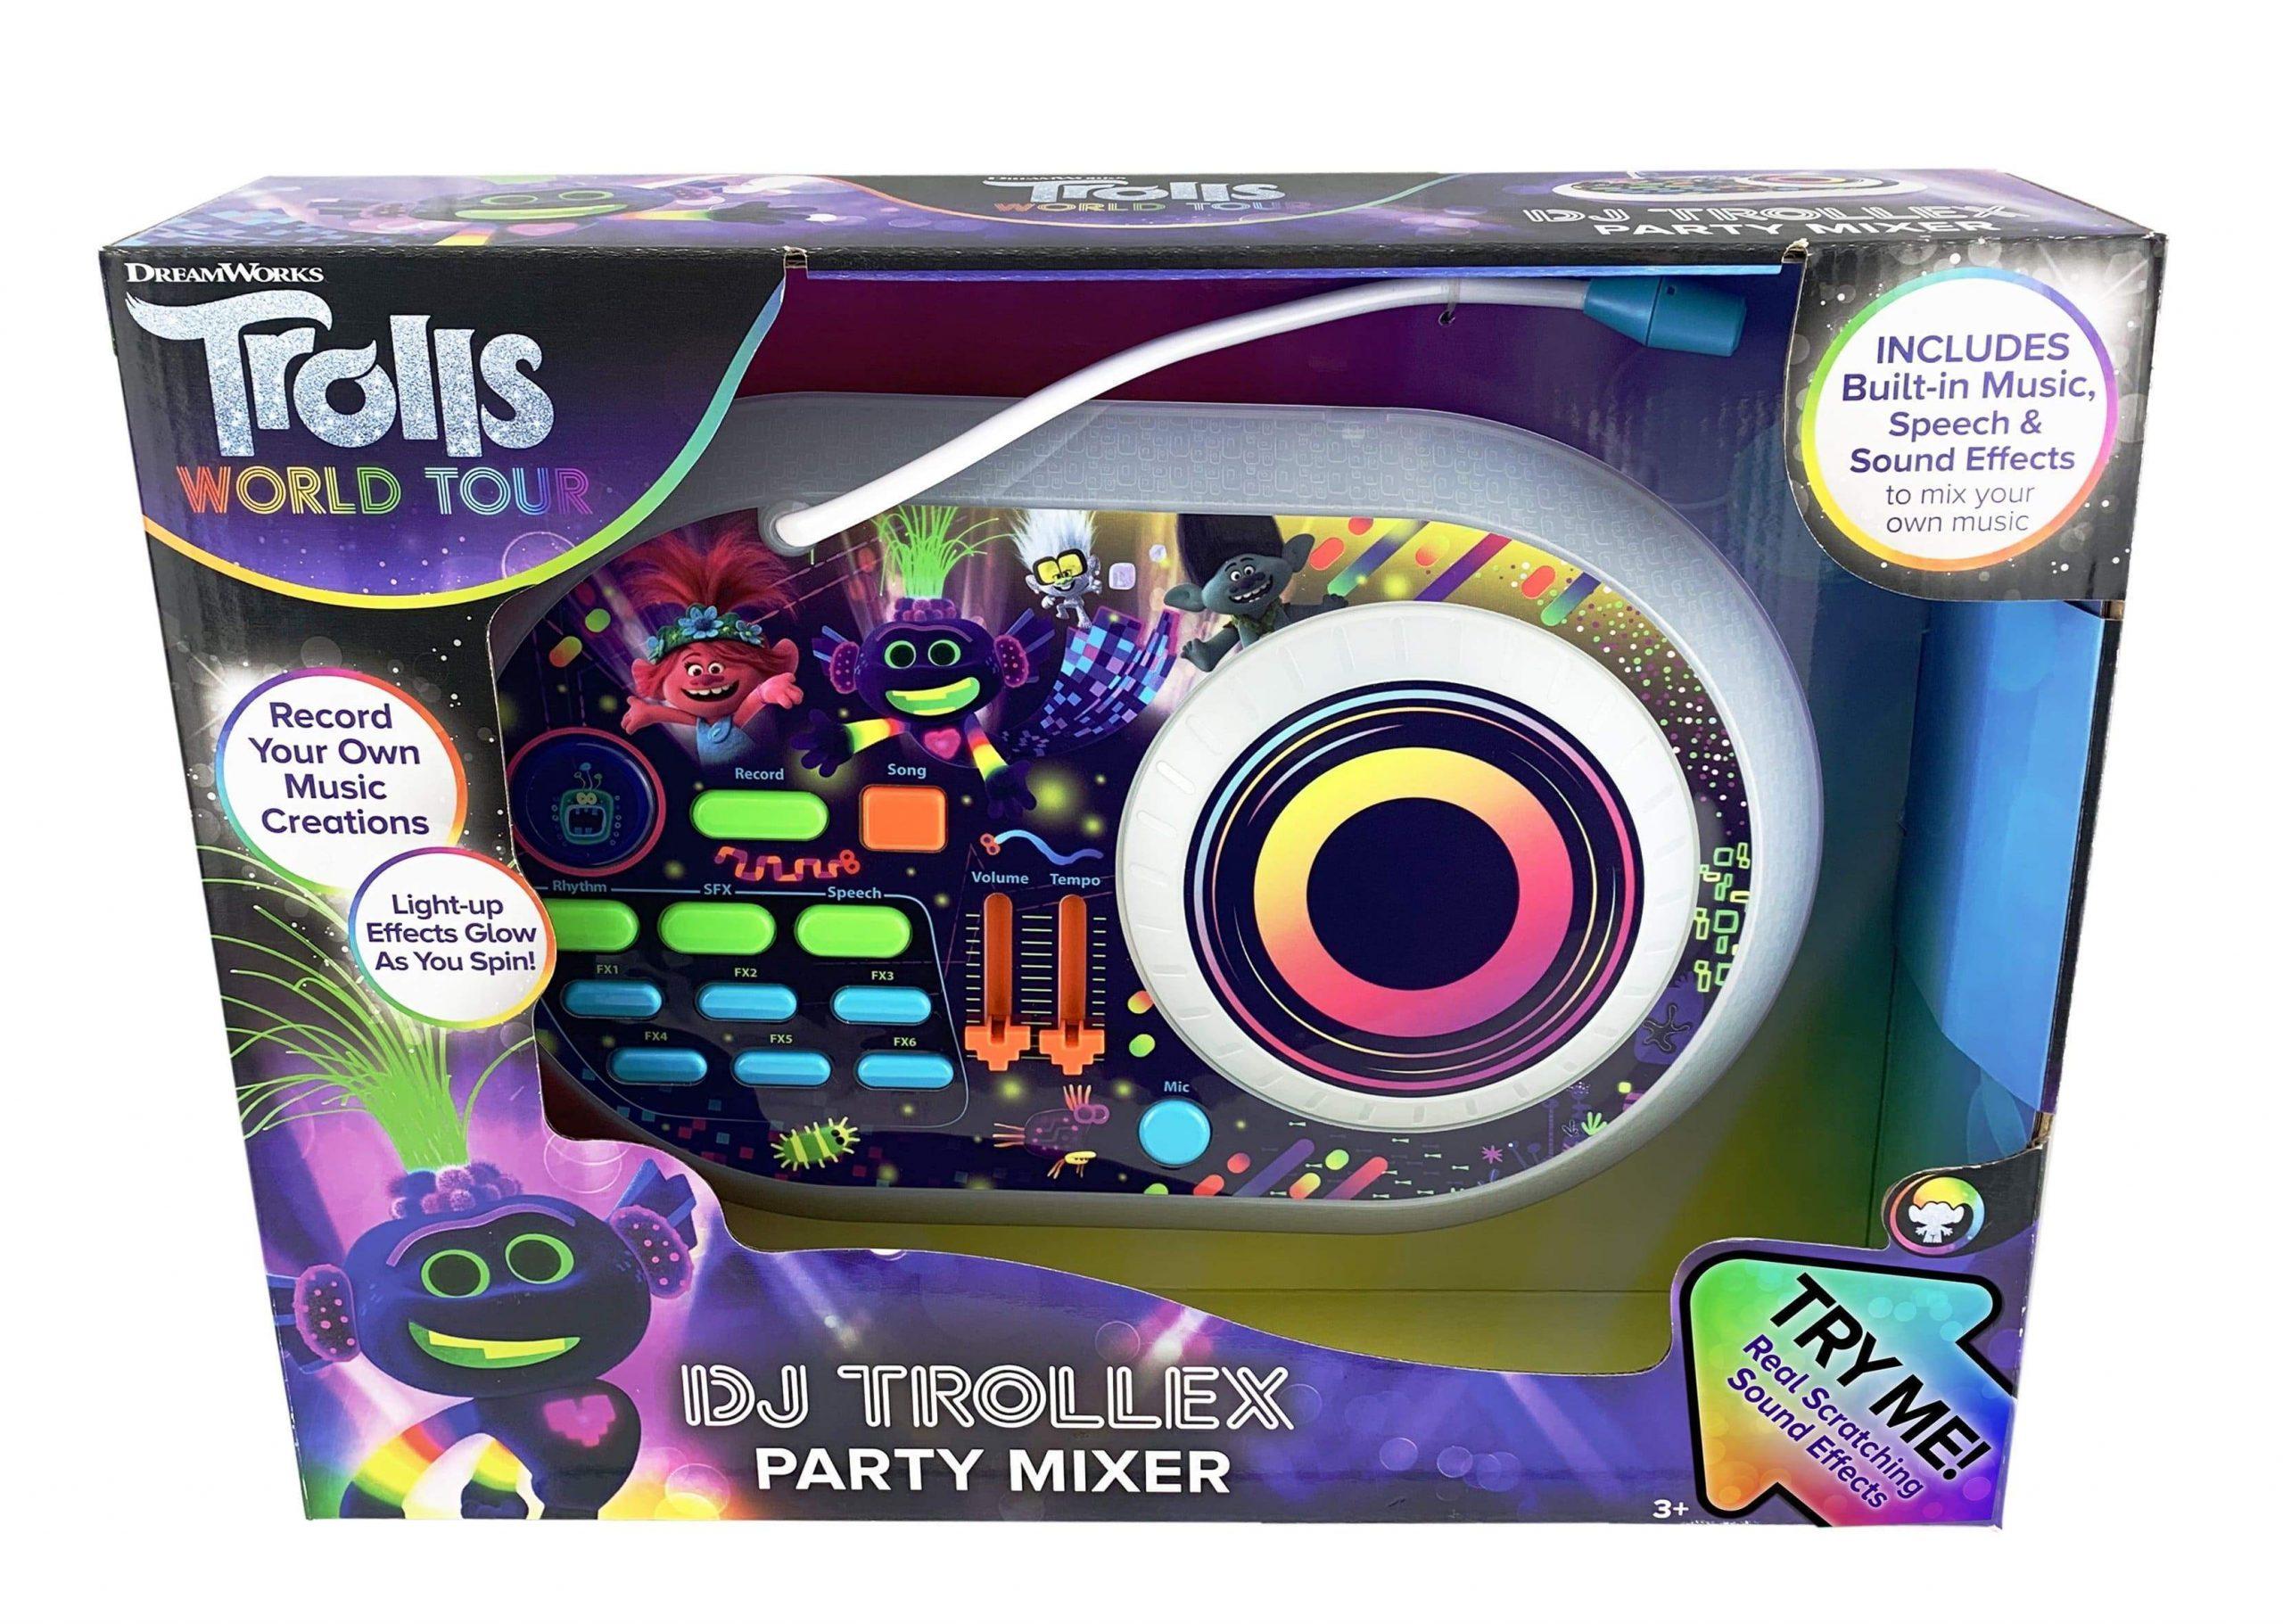 لعبة دي جي للأطفال KIDdesigns - Trolls 2 World Tour DJ Trollex  Party Mixer - cG9zdDo1NzI0OA==